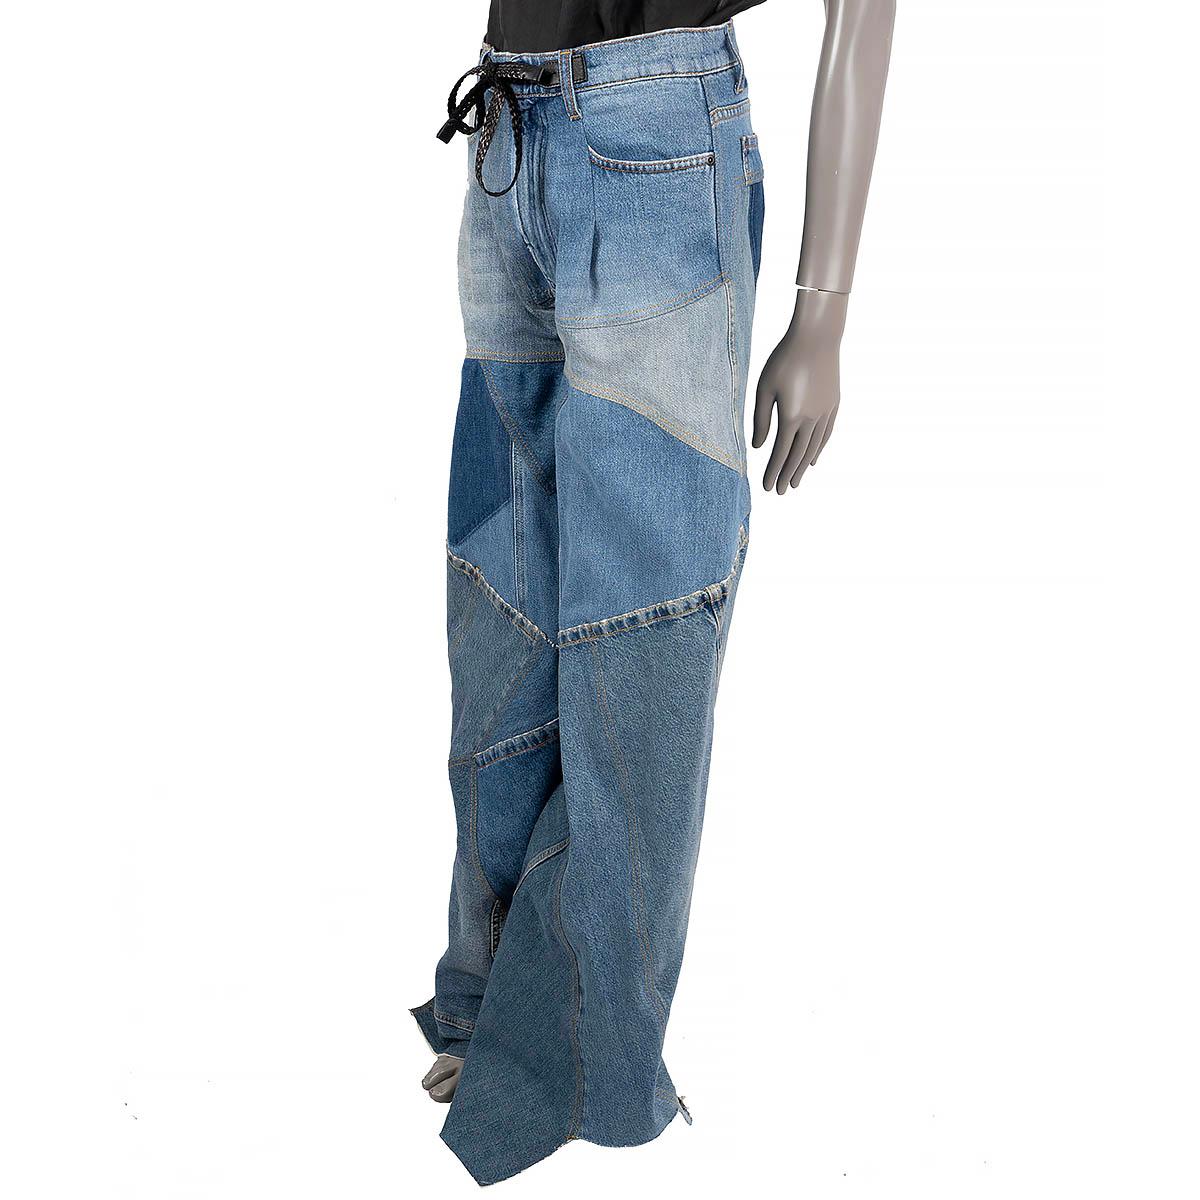 100% authentische Tom Ford High-Rise-Jeans aus blauem Patchwork-Baumwolldenim (100%). Mit weitem Bein, abgenutzten Kanten, zwei Lederpatches am Bund, drei Taschen vorne und einer hinten. Sie wurden getragen und sind in ausgezeichnetem Zustand.

2020